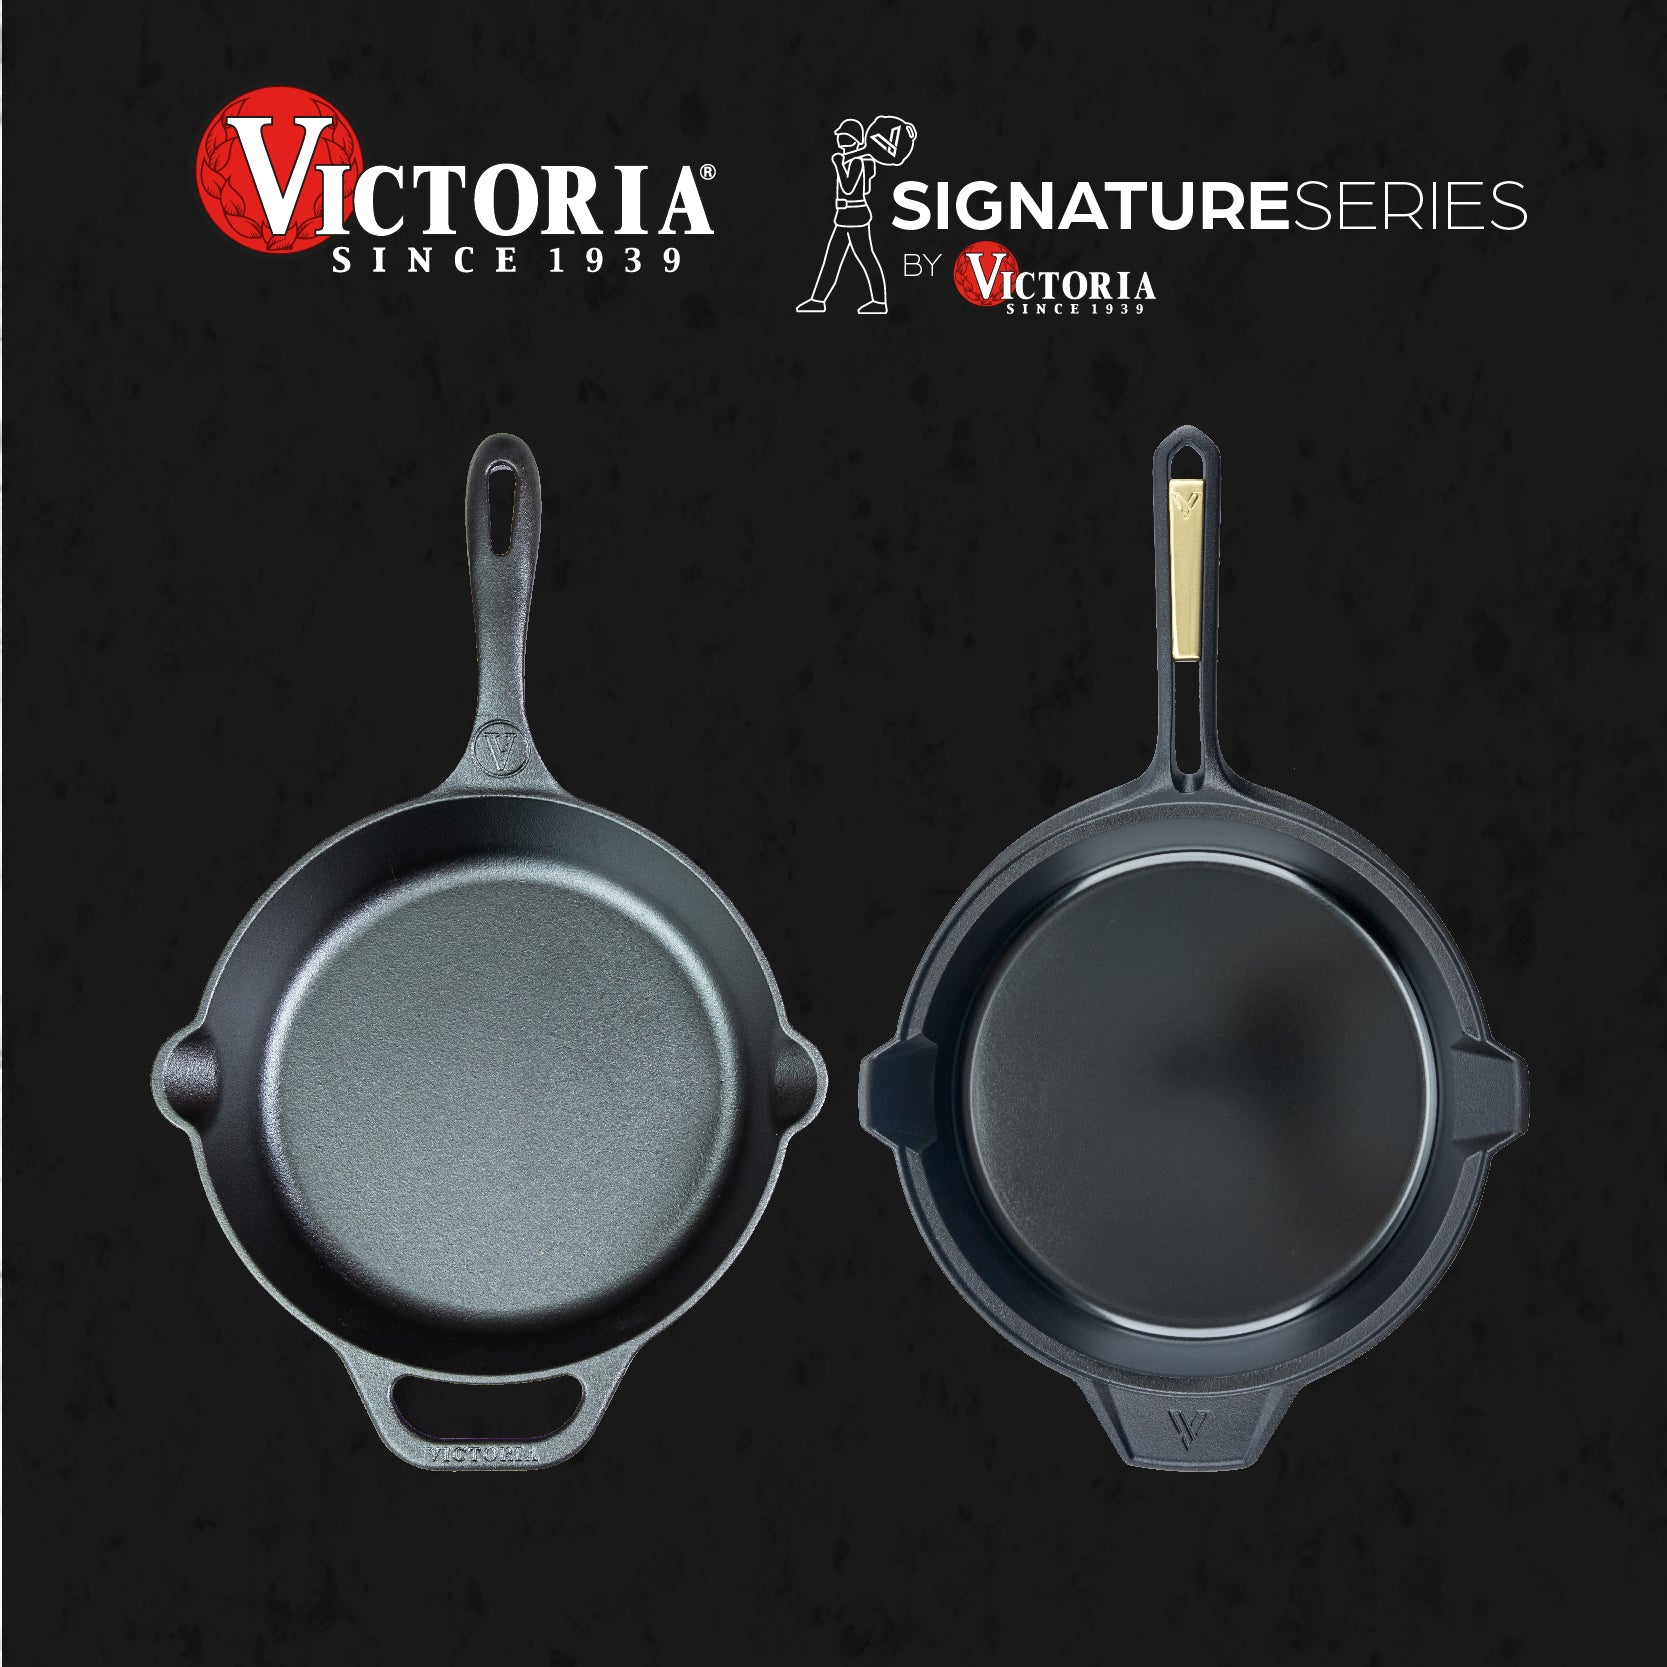 Victoria vs Signature Series: diferencia en nuestras líneas de productos